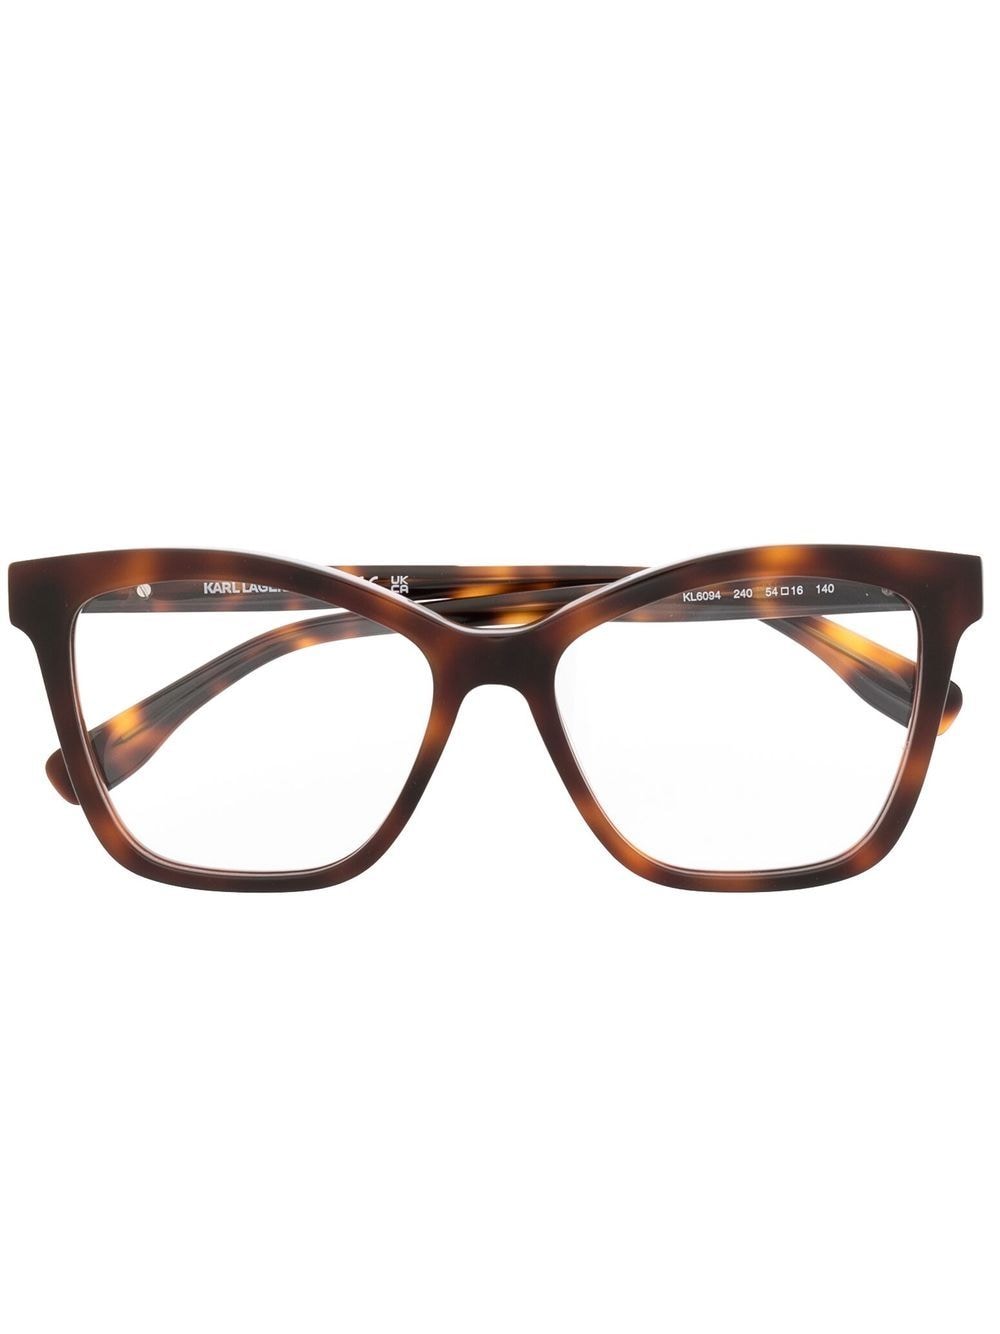 karl lagerfeld lunettes de vue à plaque logo - marron